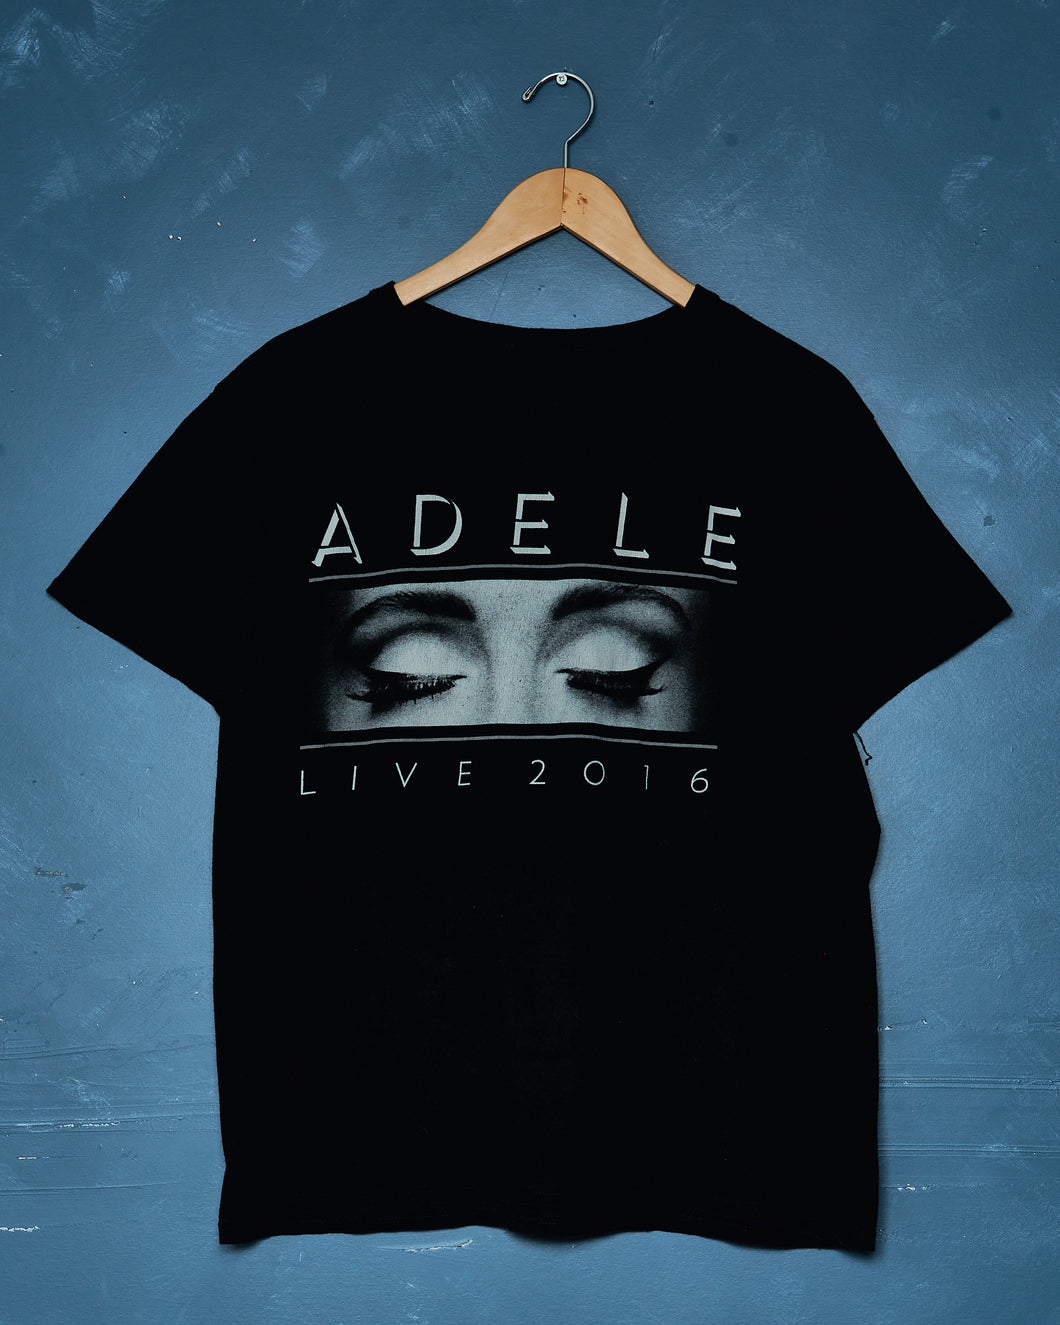 2016 Adele Live Tour Tee